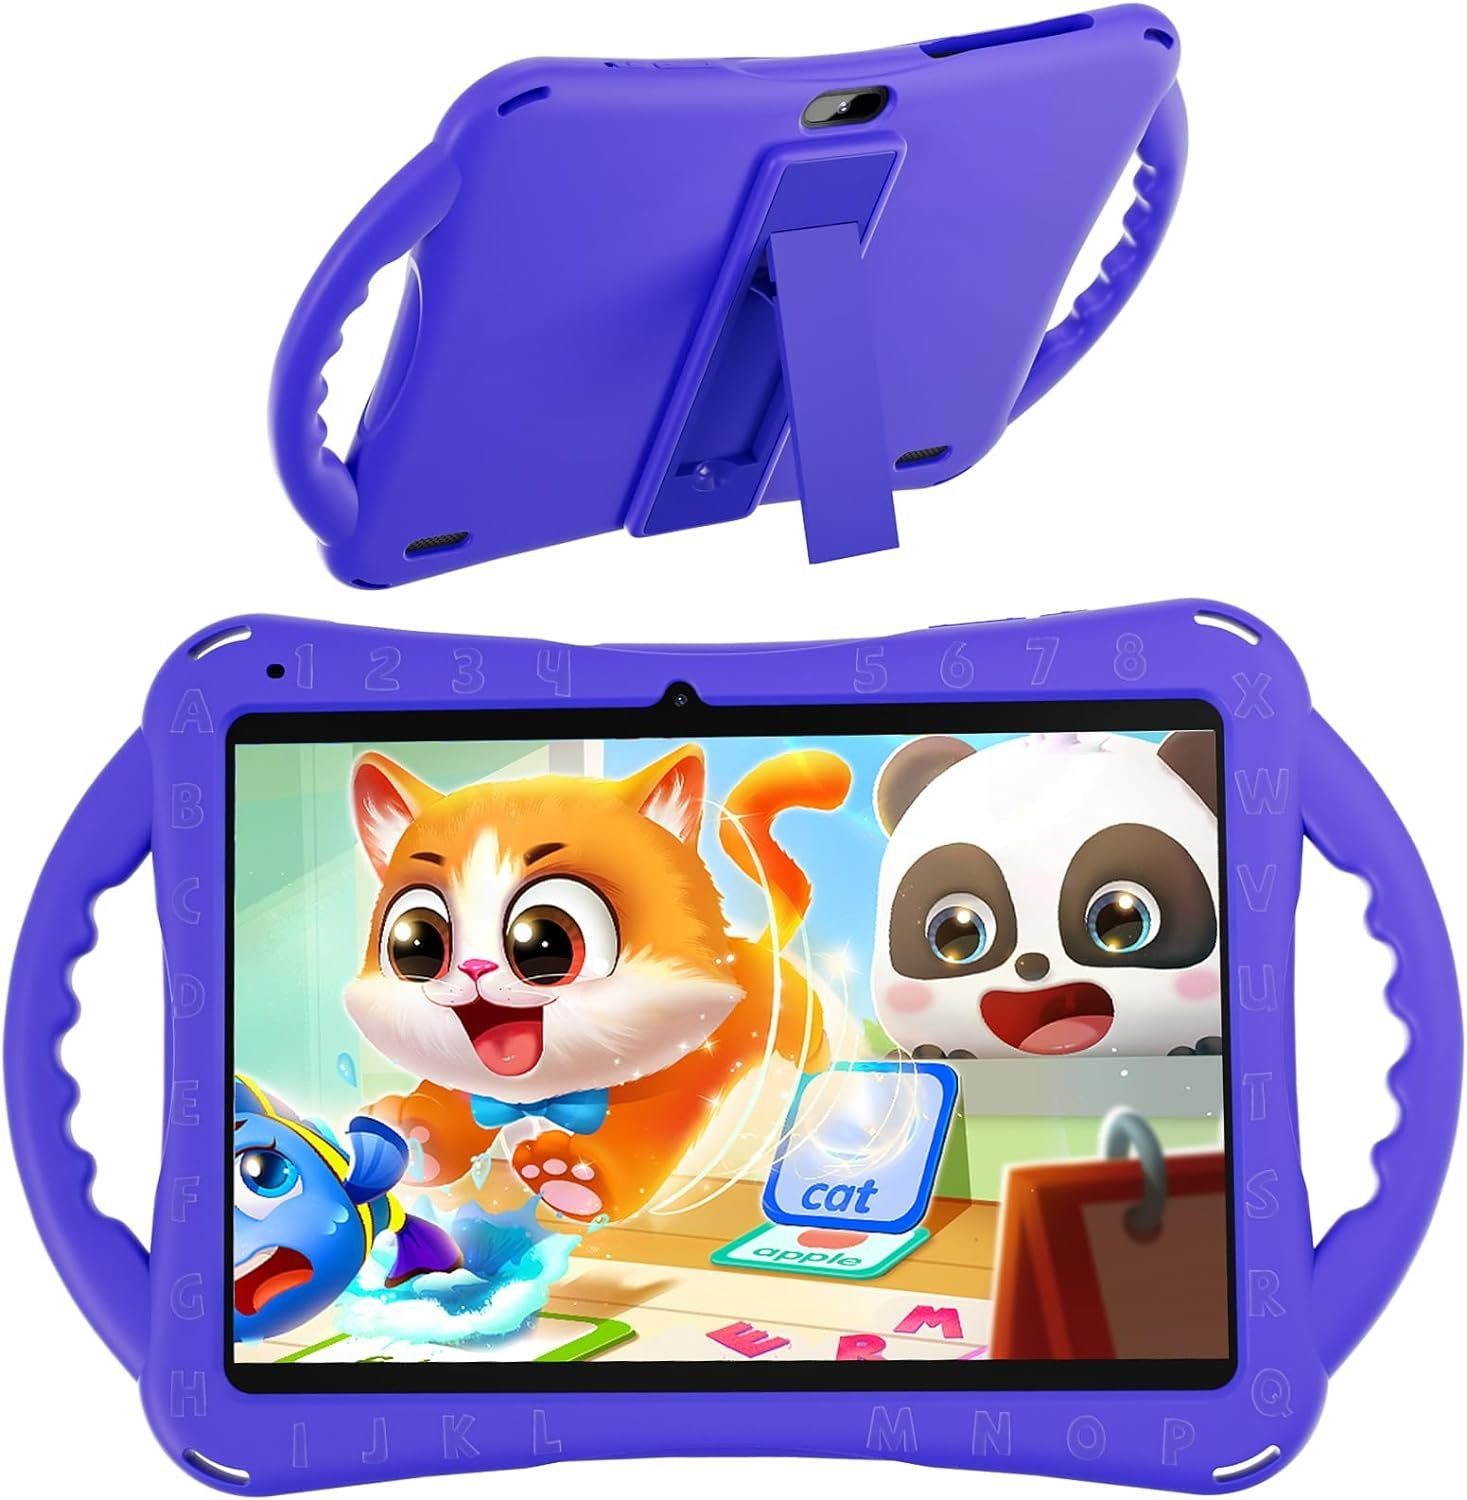 SGIN Kinder's 2 GB RAM Octa-Core bis zu 1,6 GHz Prozessor 5000 mAh Akku Tablet (10,1", 64 GB, Android 12, 2,4 G/5G WiFi, Kinder-Technologie für grenzenloses Lernen und Spielen)